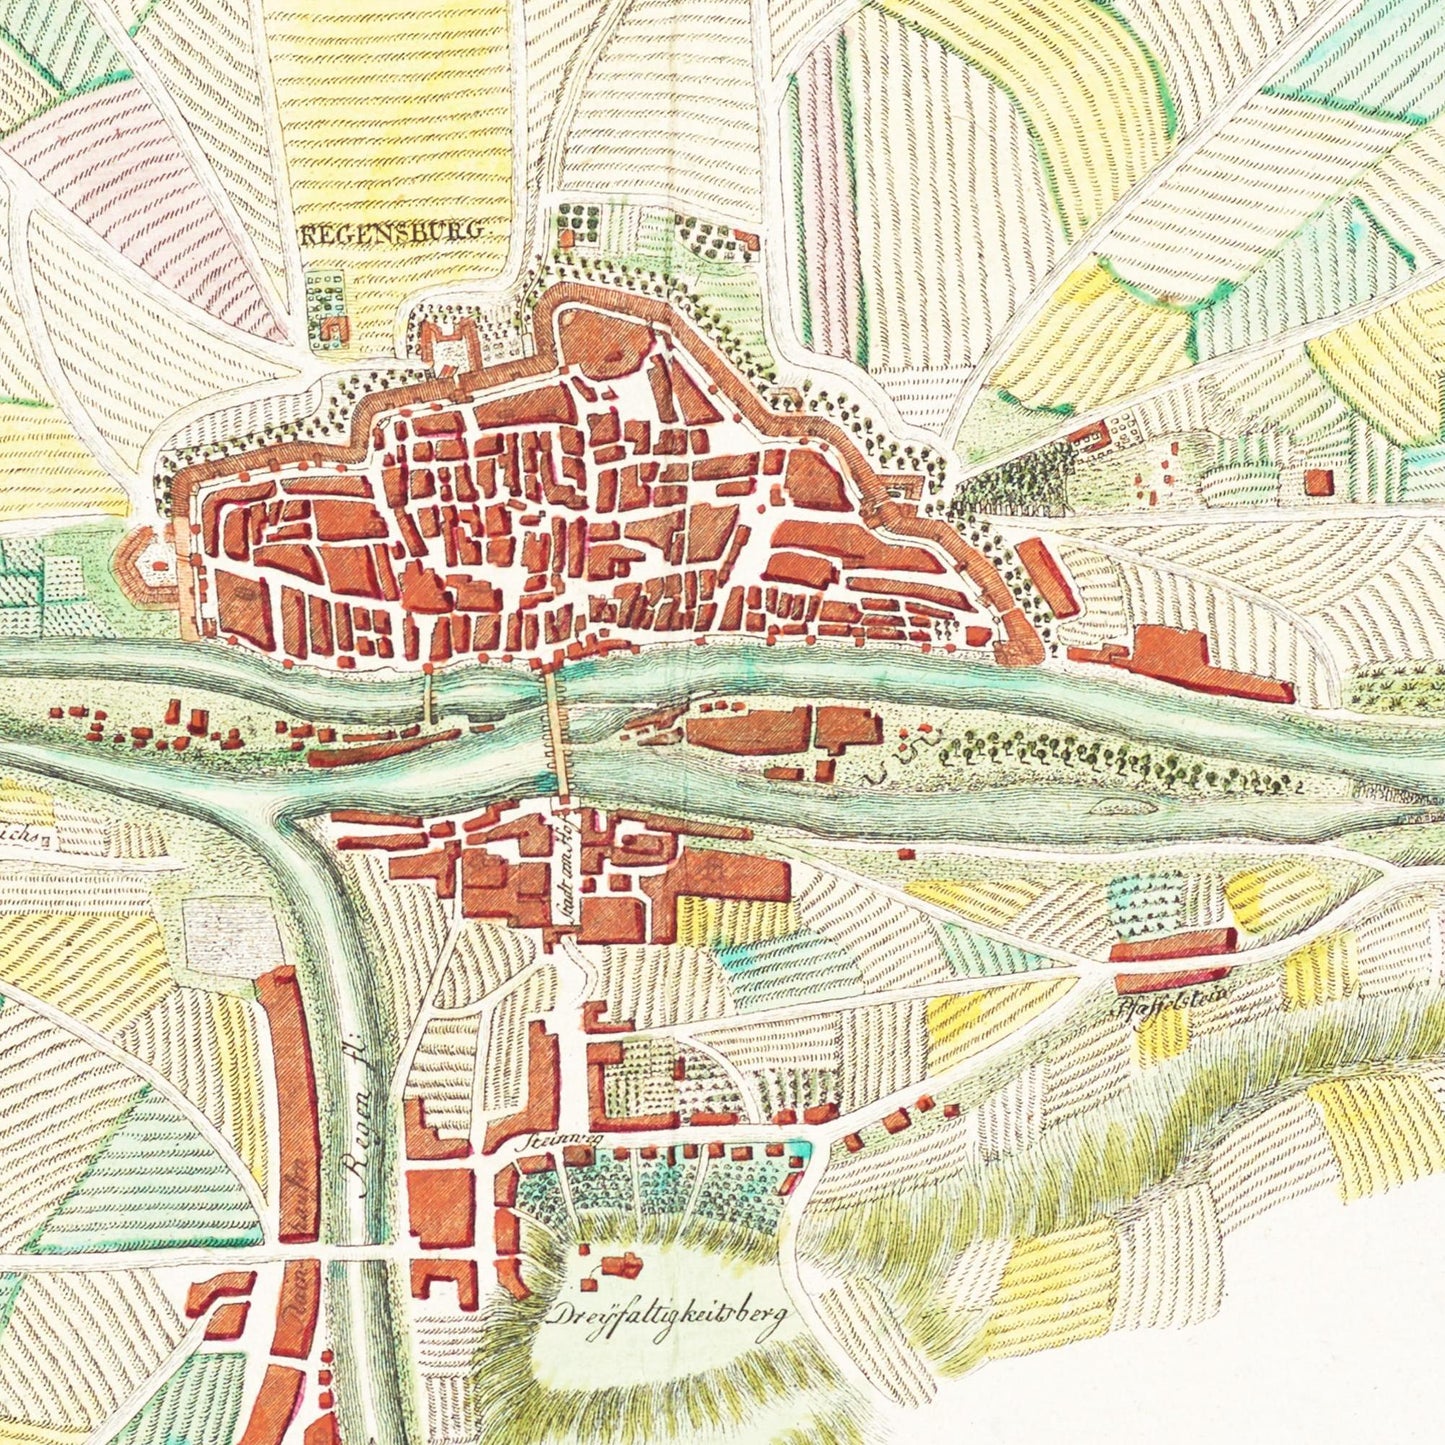 Historische Landkarte Regensburg um 1801